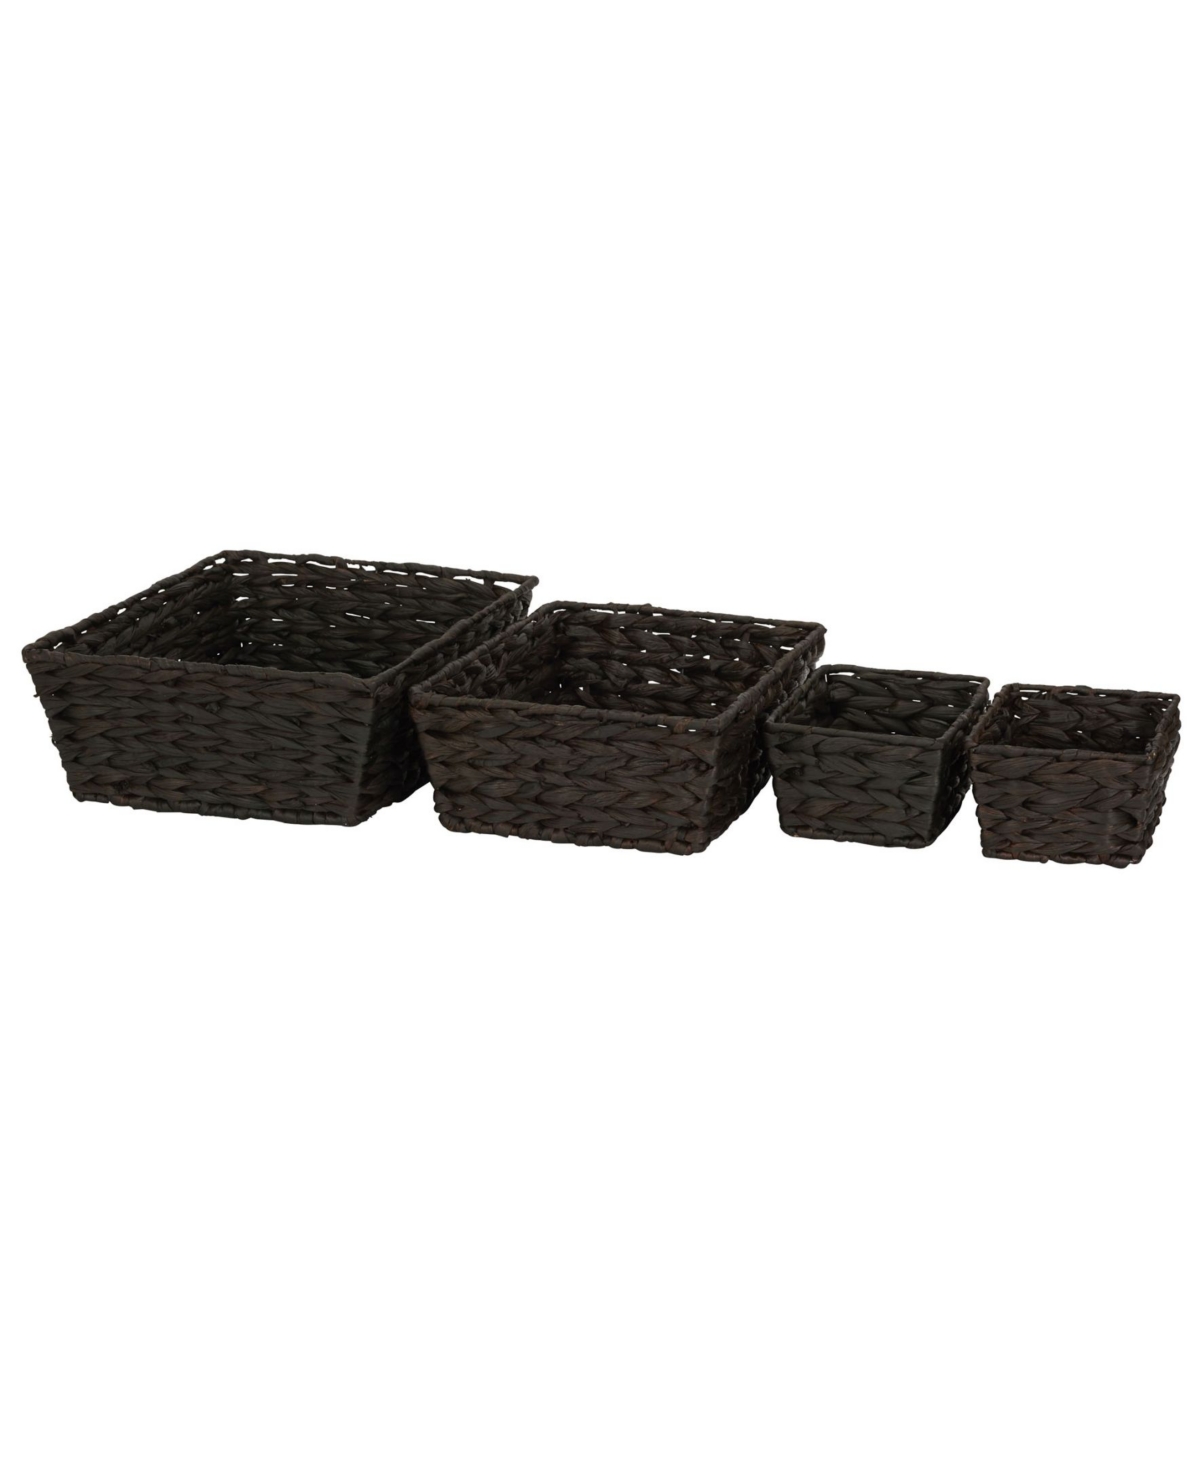 Wicker Storage Baskets, Set of 4 - Brown